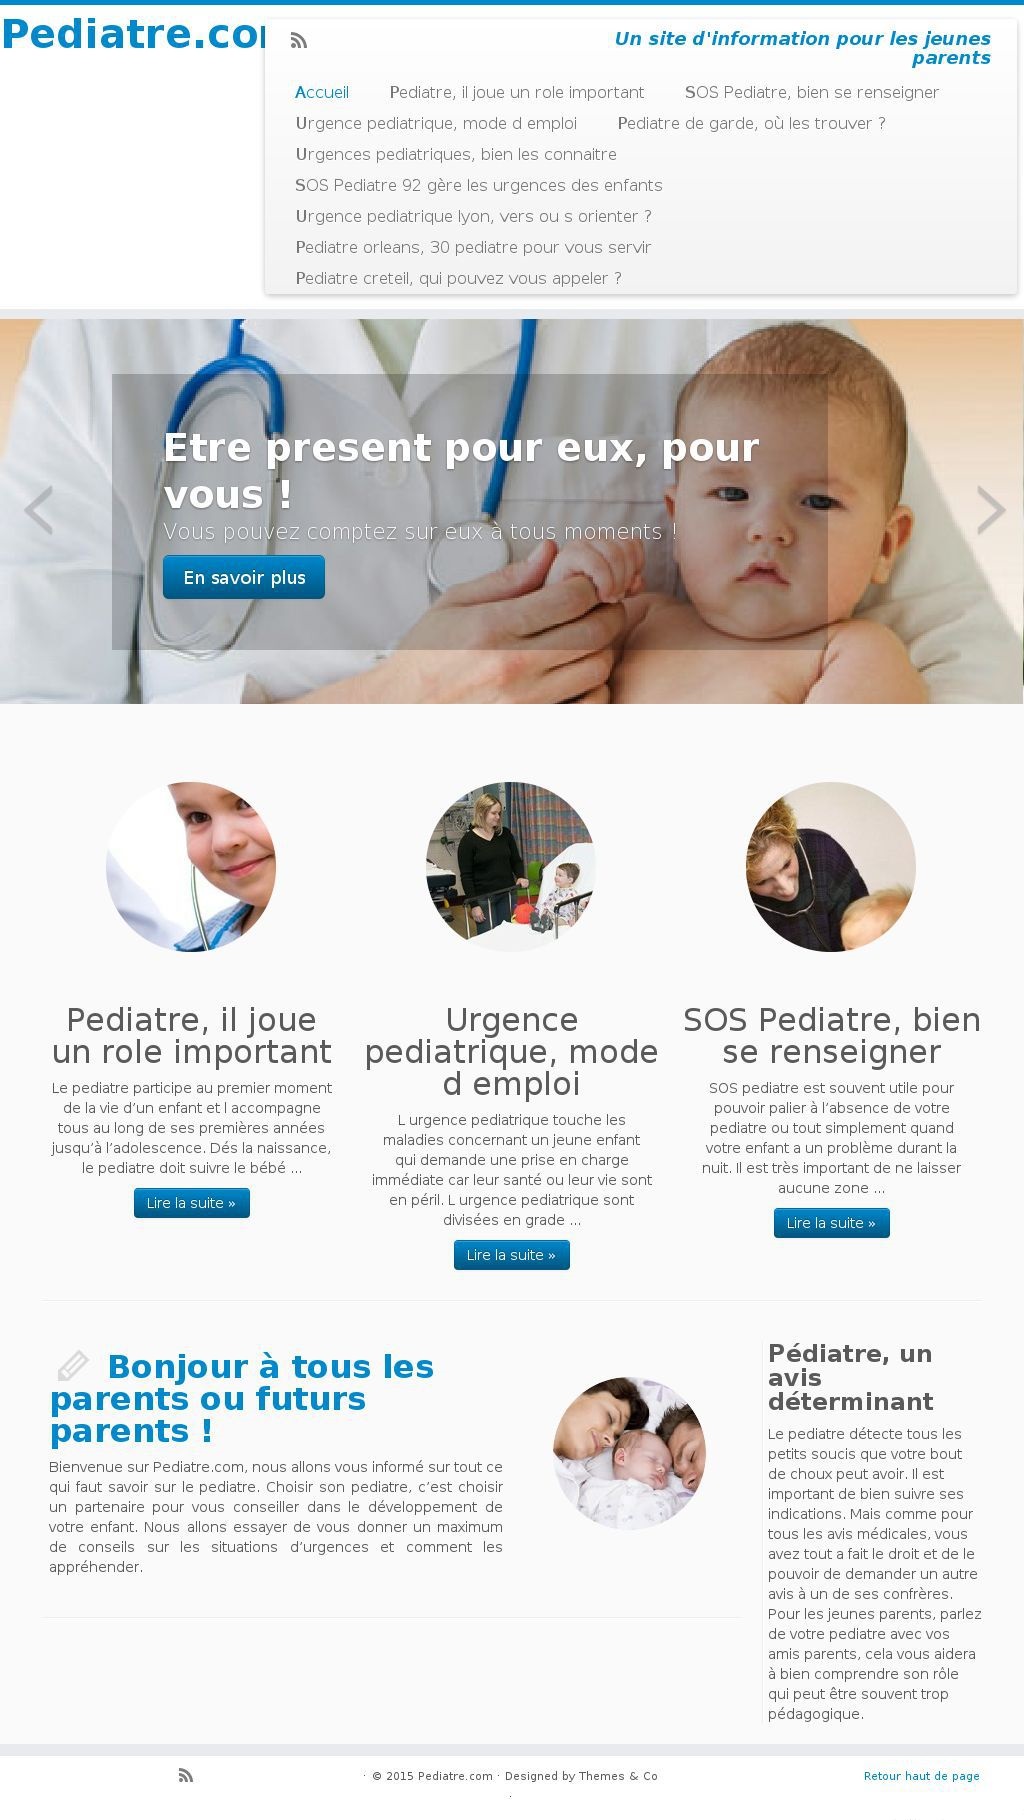 Pediatre.com propose un vaste choix de service de Pédiatre en ligne